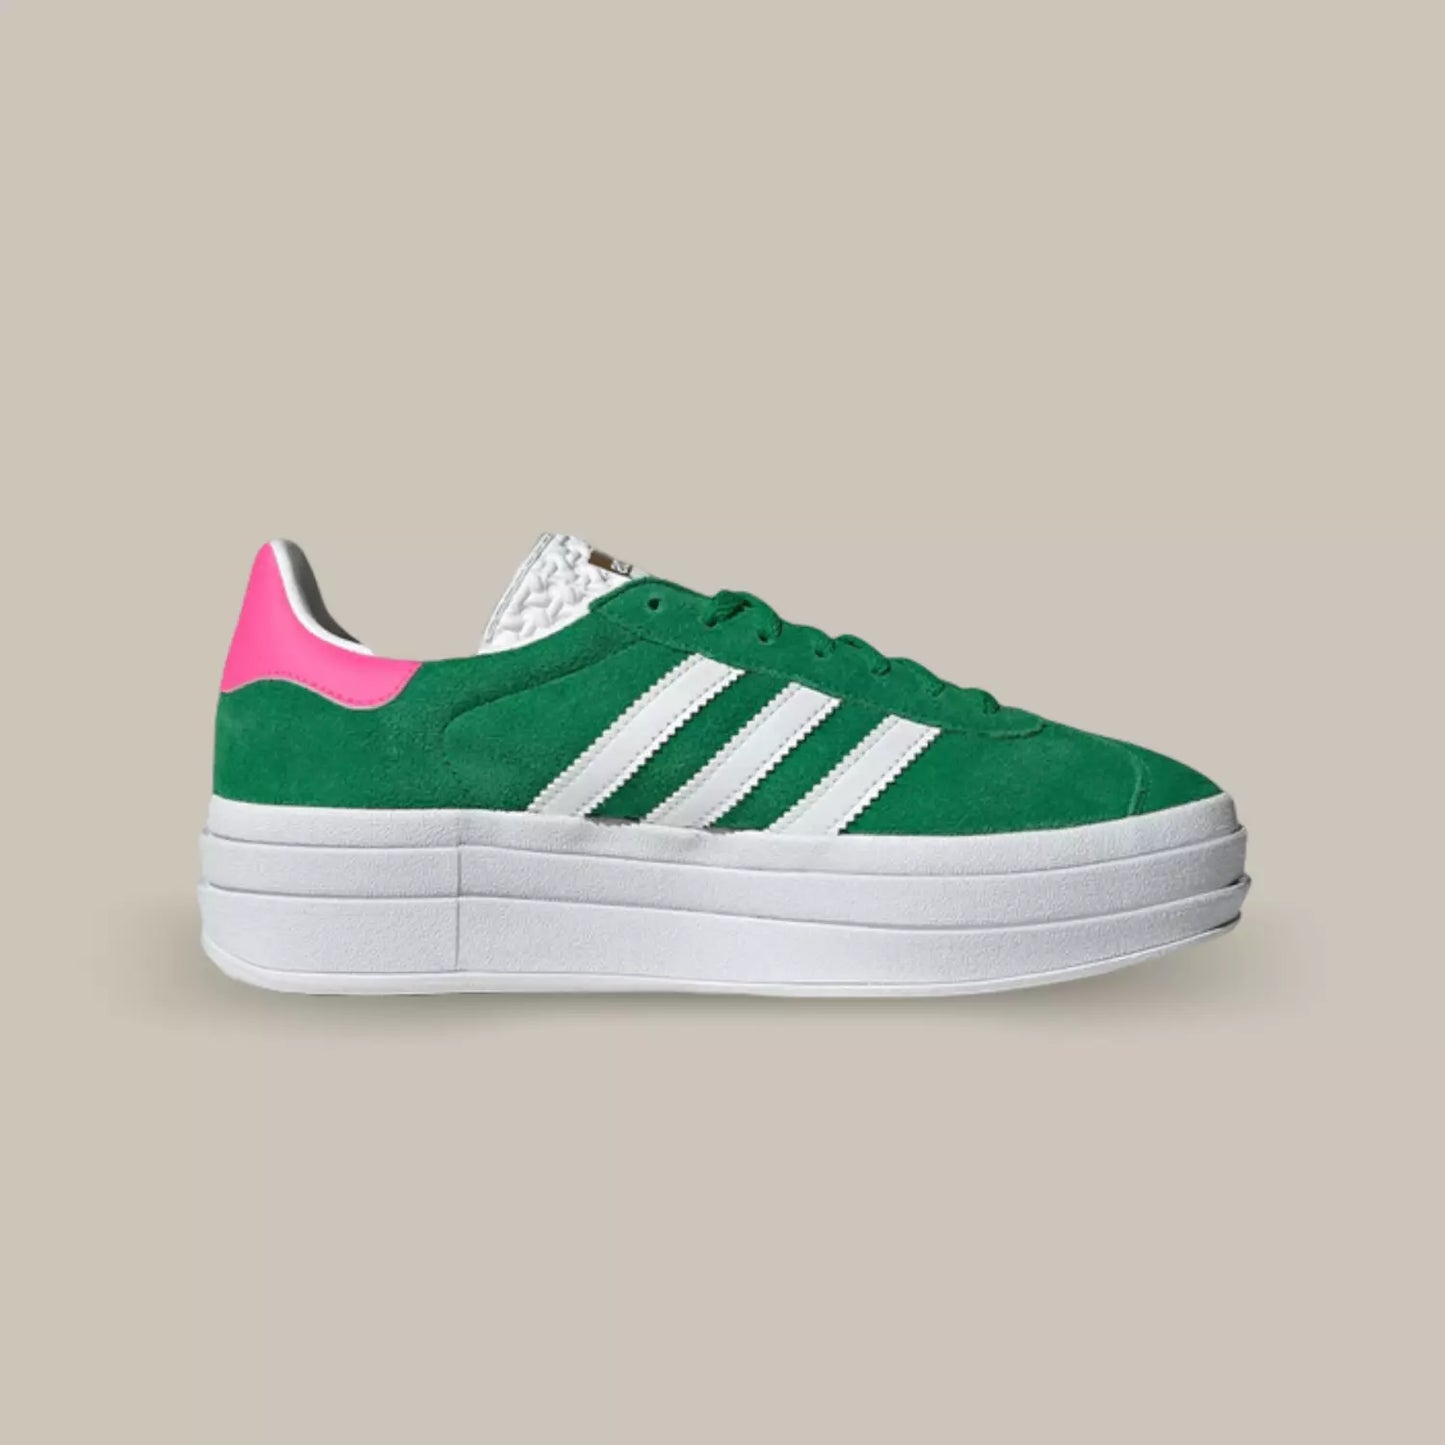 La adidas gazelle bold lucid green pink de profil avec sa couleur verte, ses trois bandes blanches adidas, son talon rose et sa semelle compensée blanche.